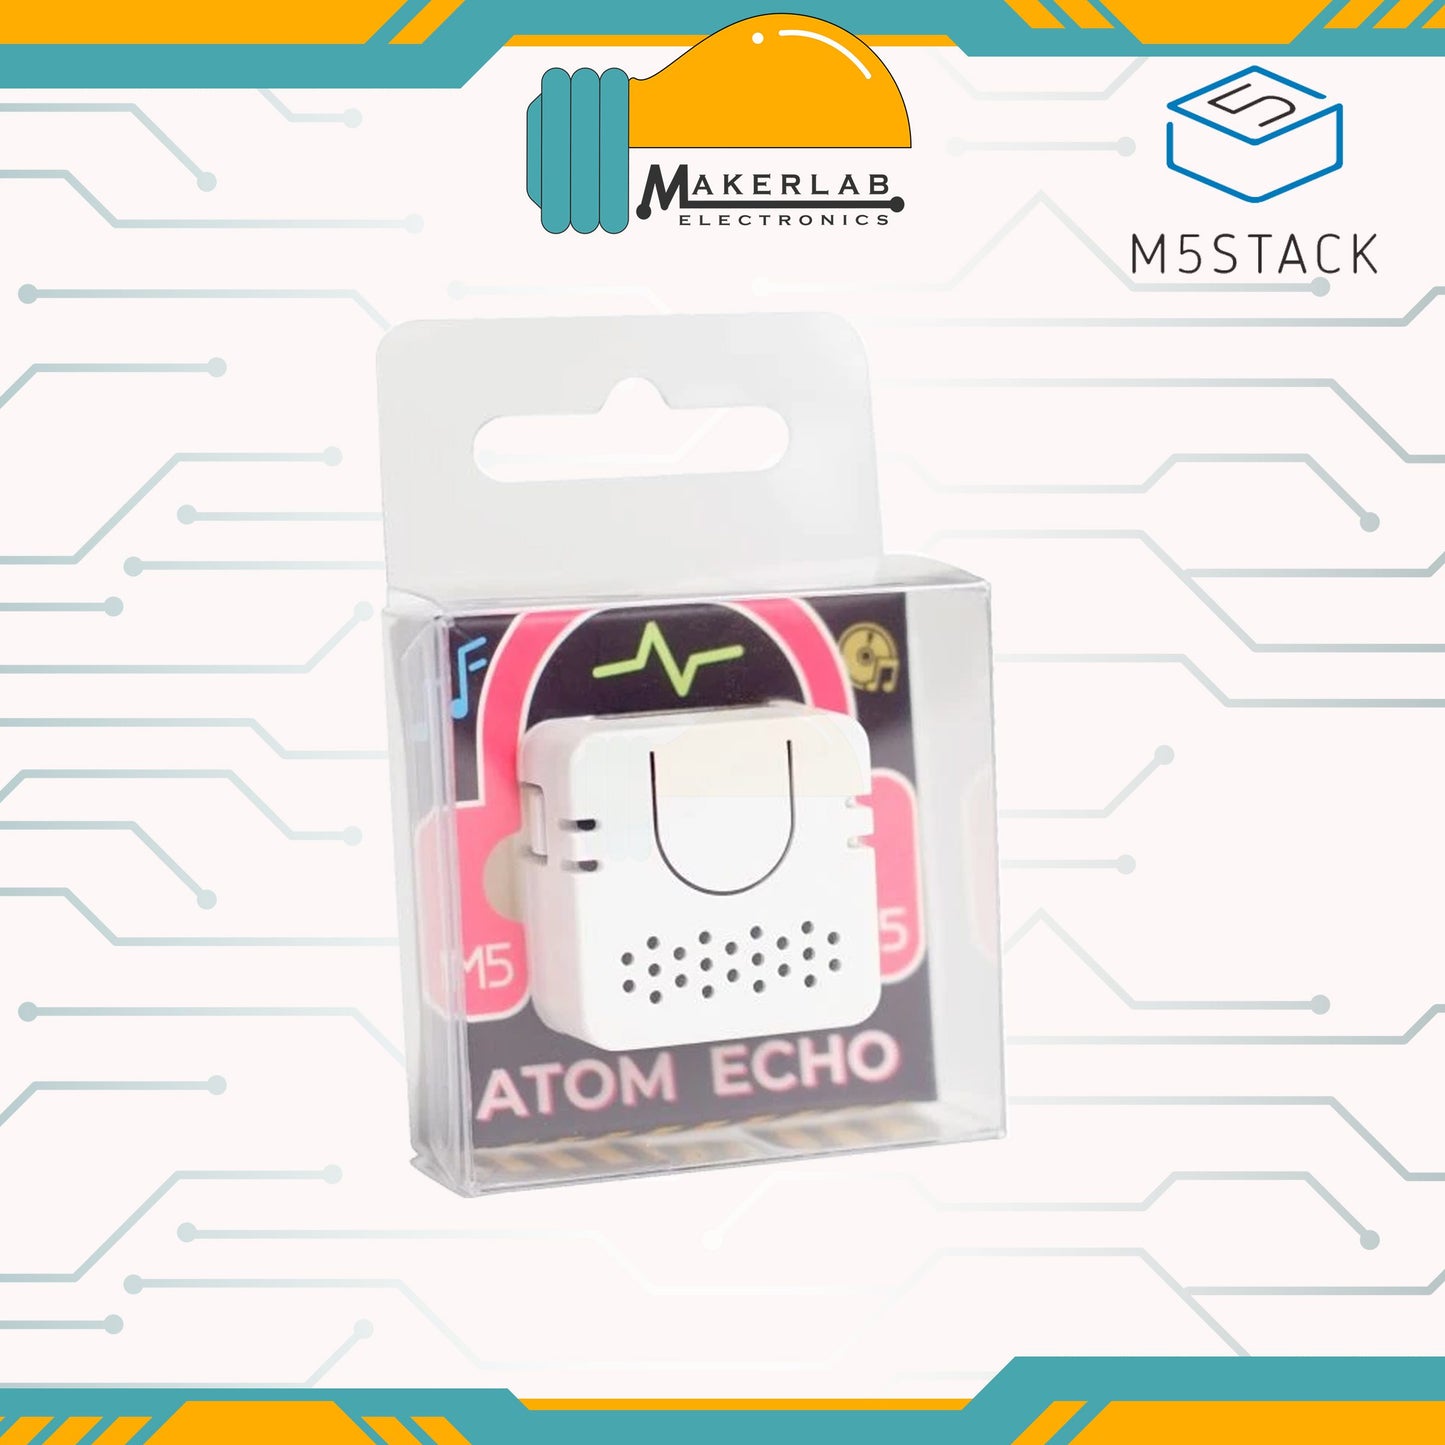 ATOM Echo Smart Speaker Development Kit